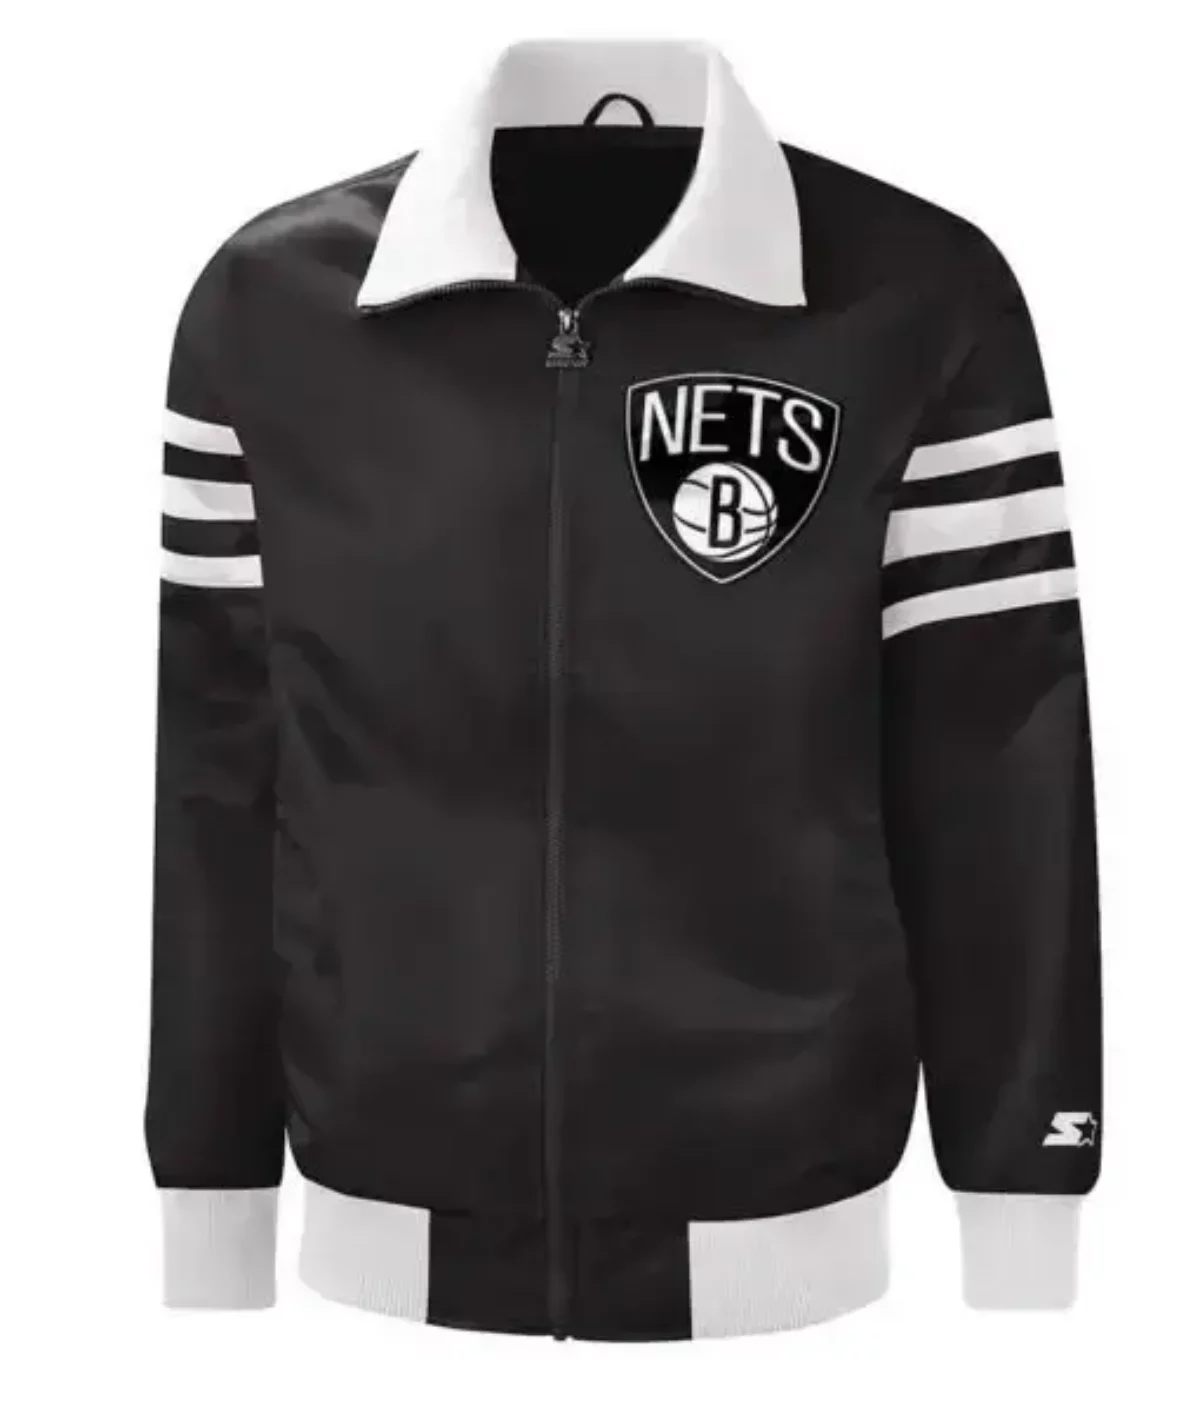 Brooklyn Nets Winter Jackets, Nets Collection, Nets Winter Jackets Gear